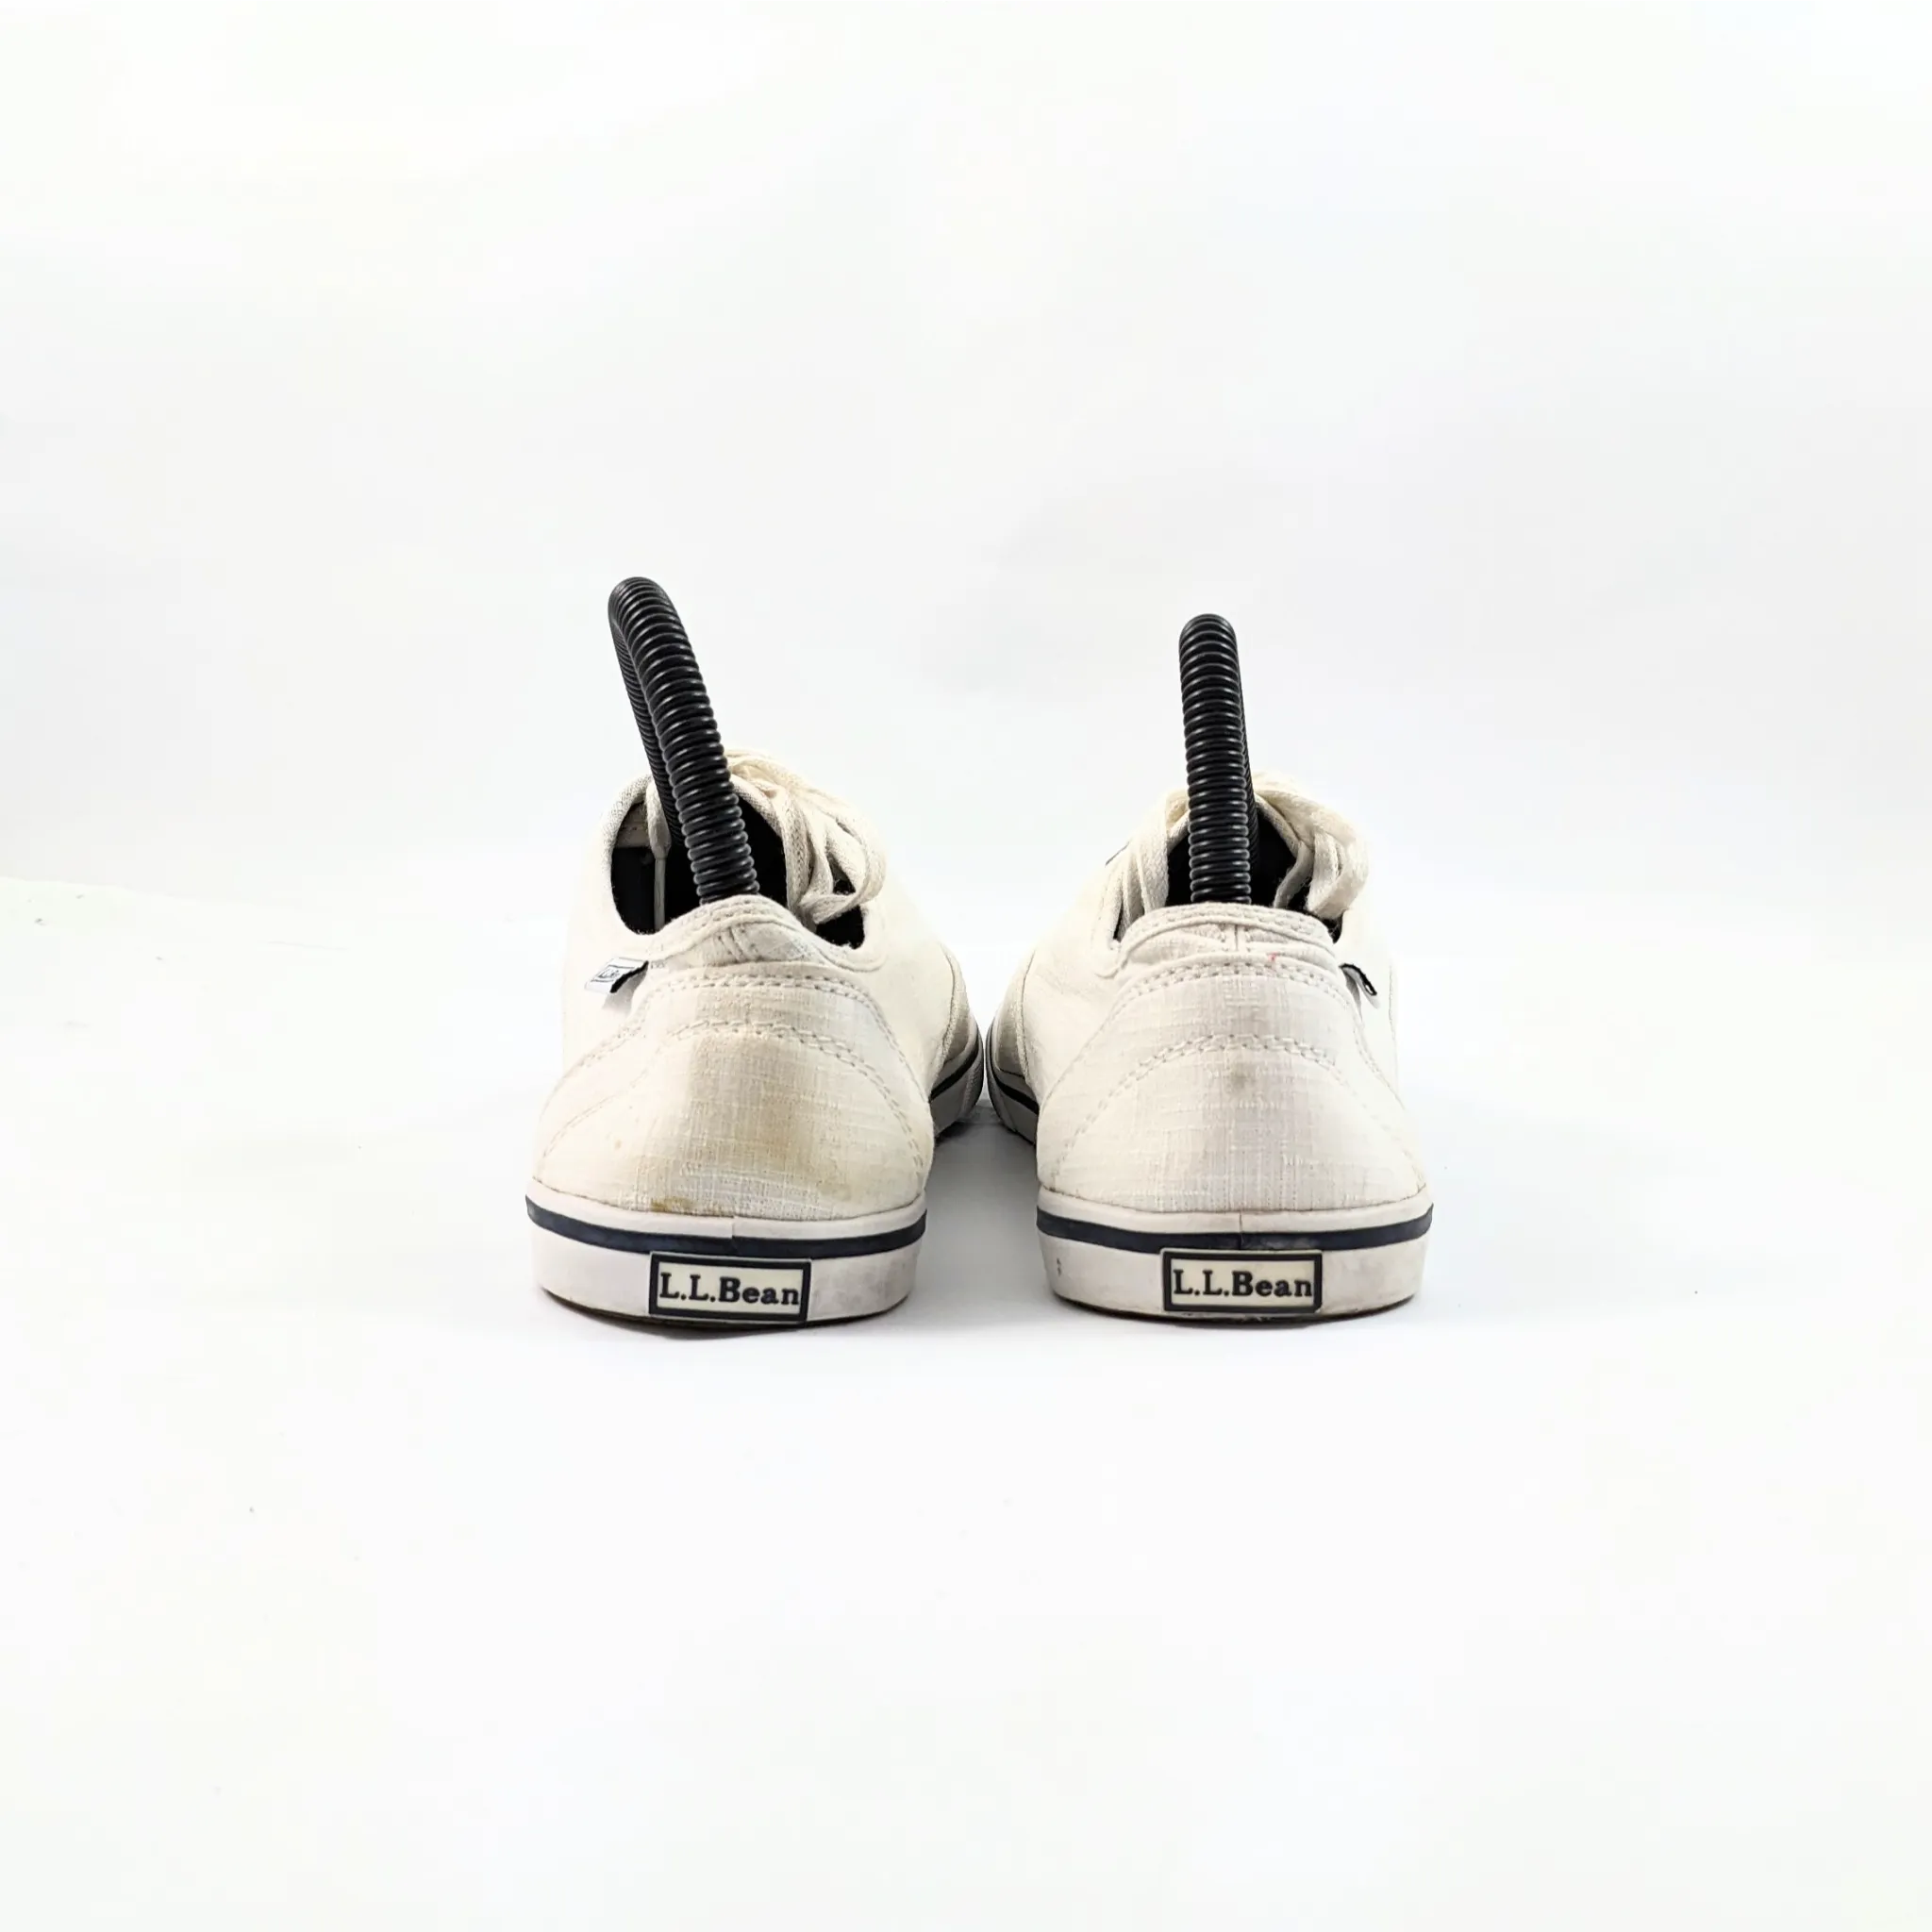 L.L.Bean White Sneakers